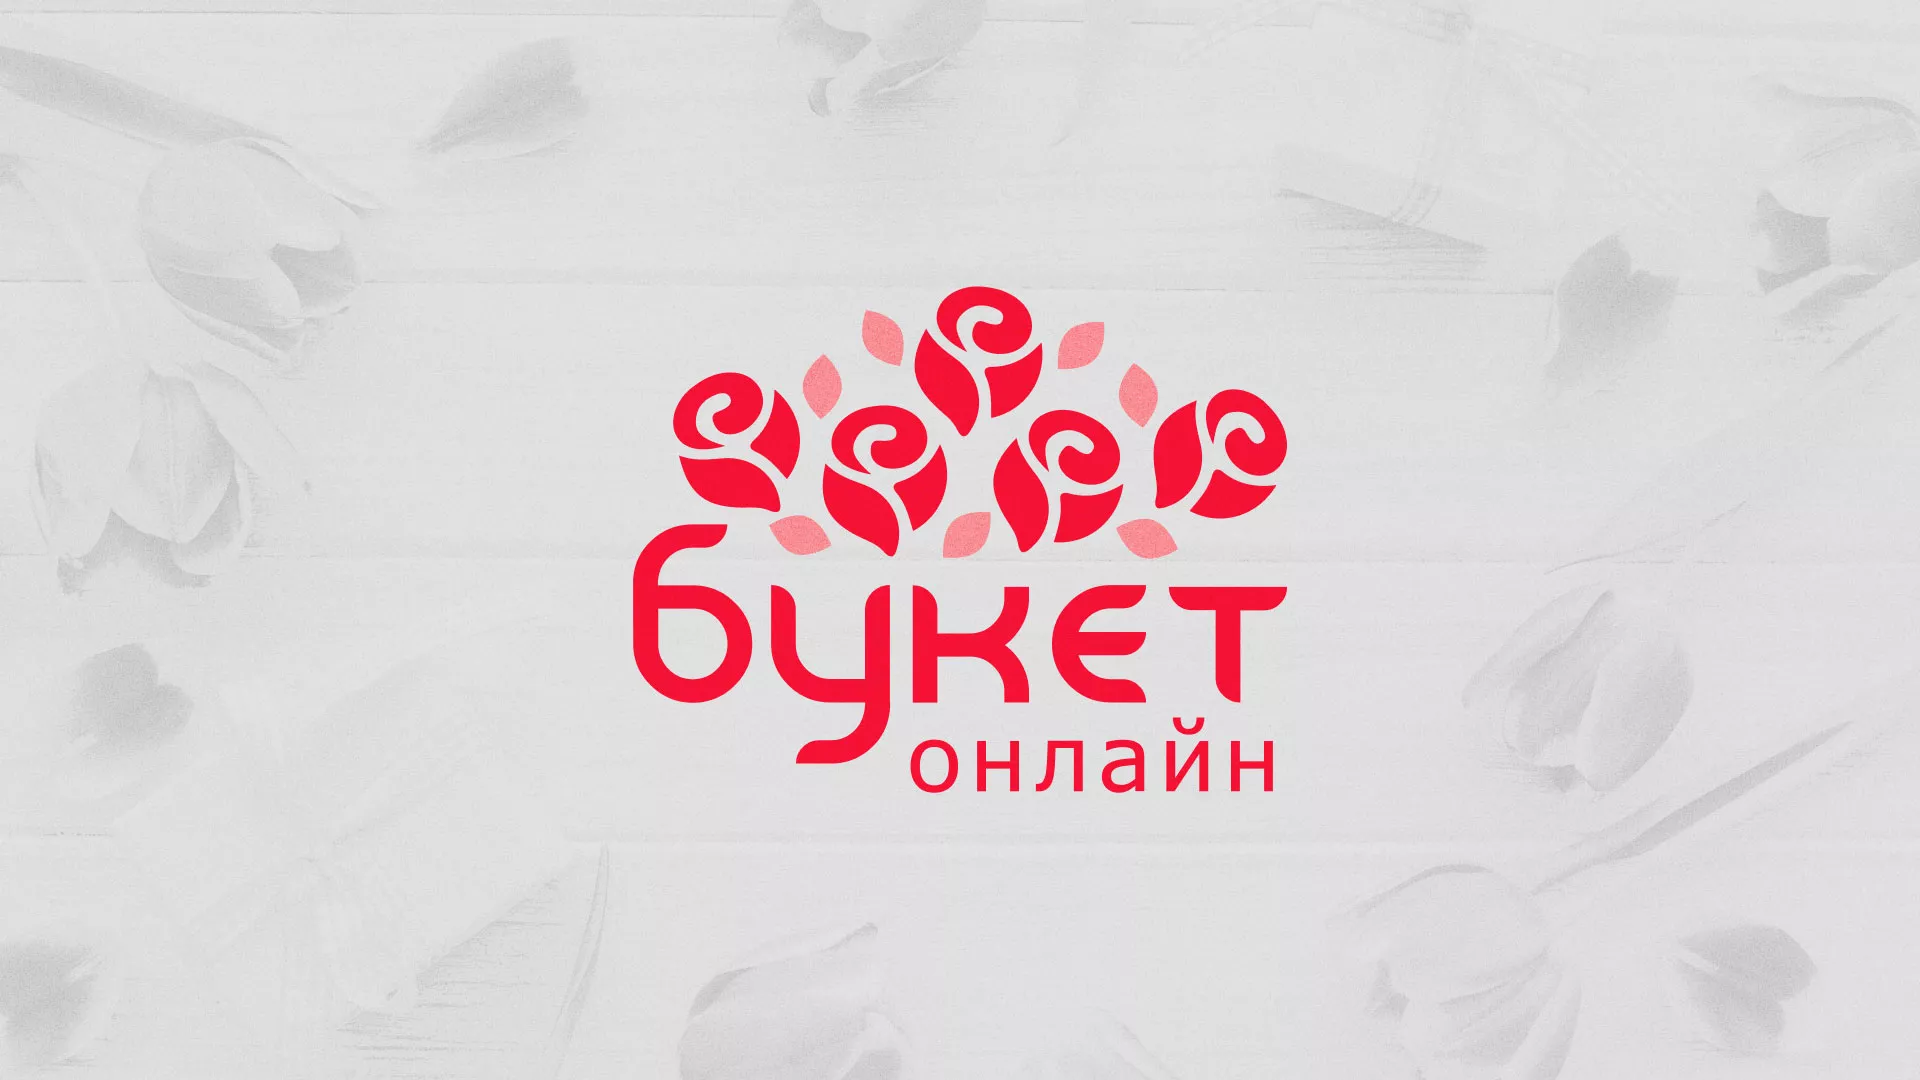 Создание интернет-магазина «Букет-онлайн» по цветам в Урюпинске